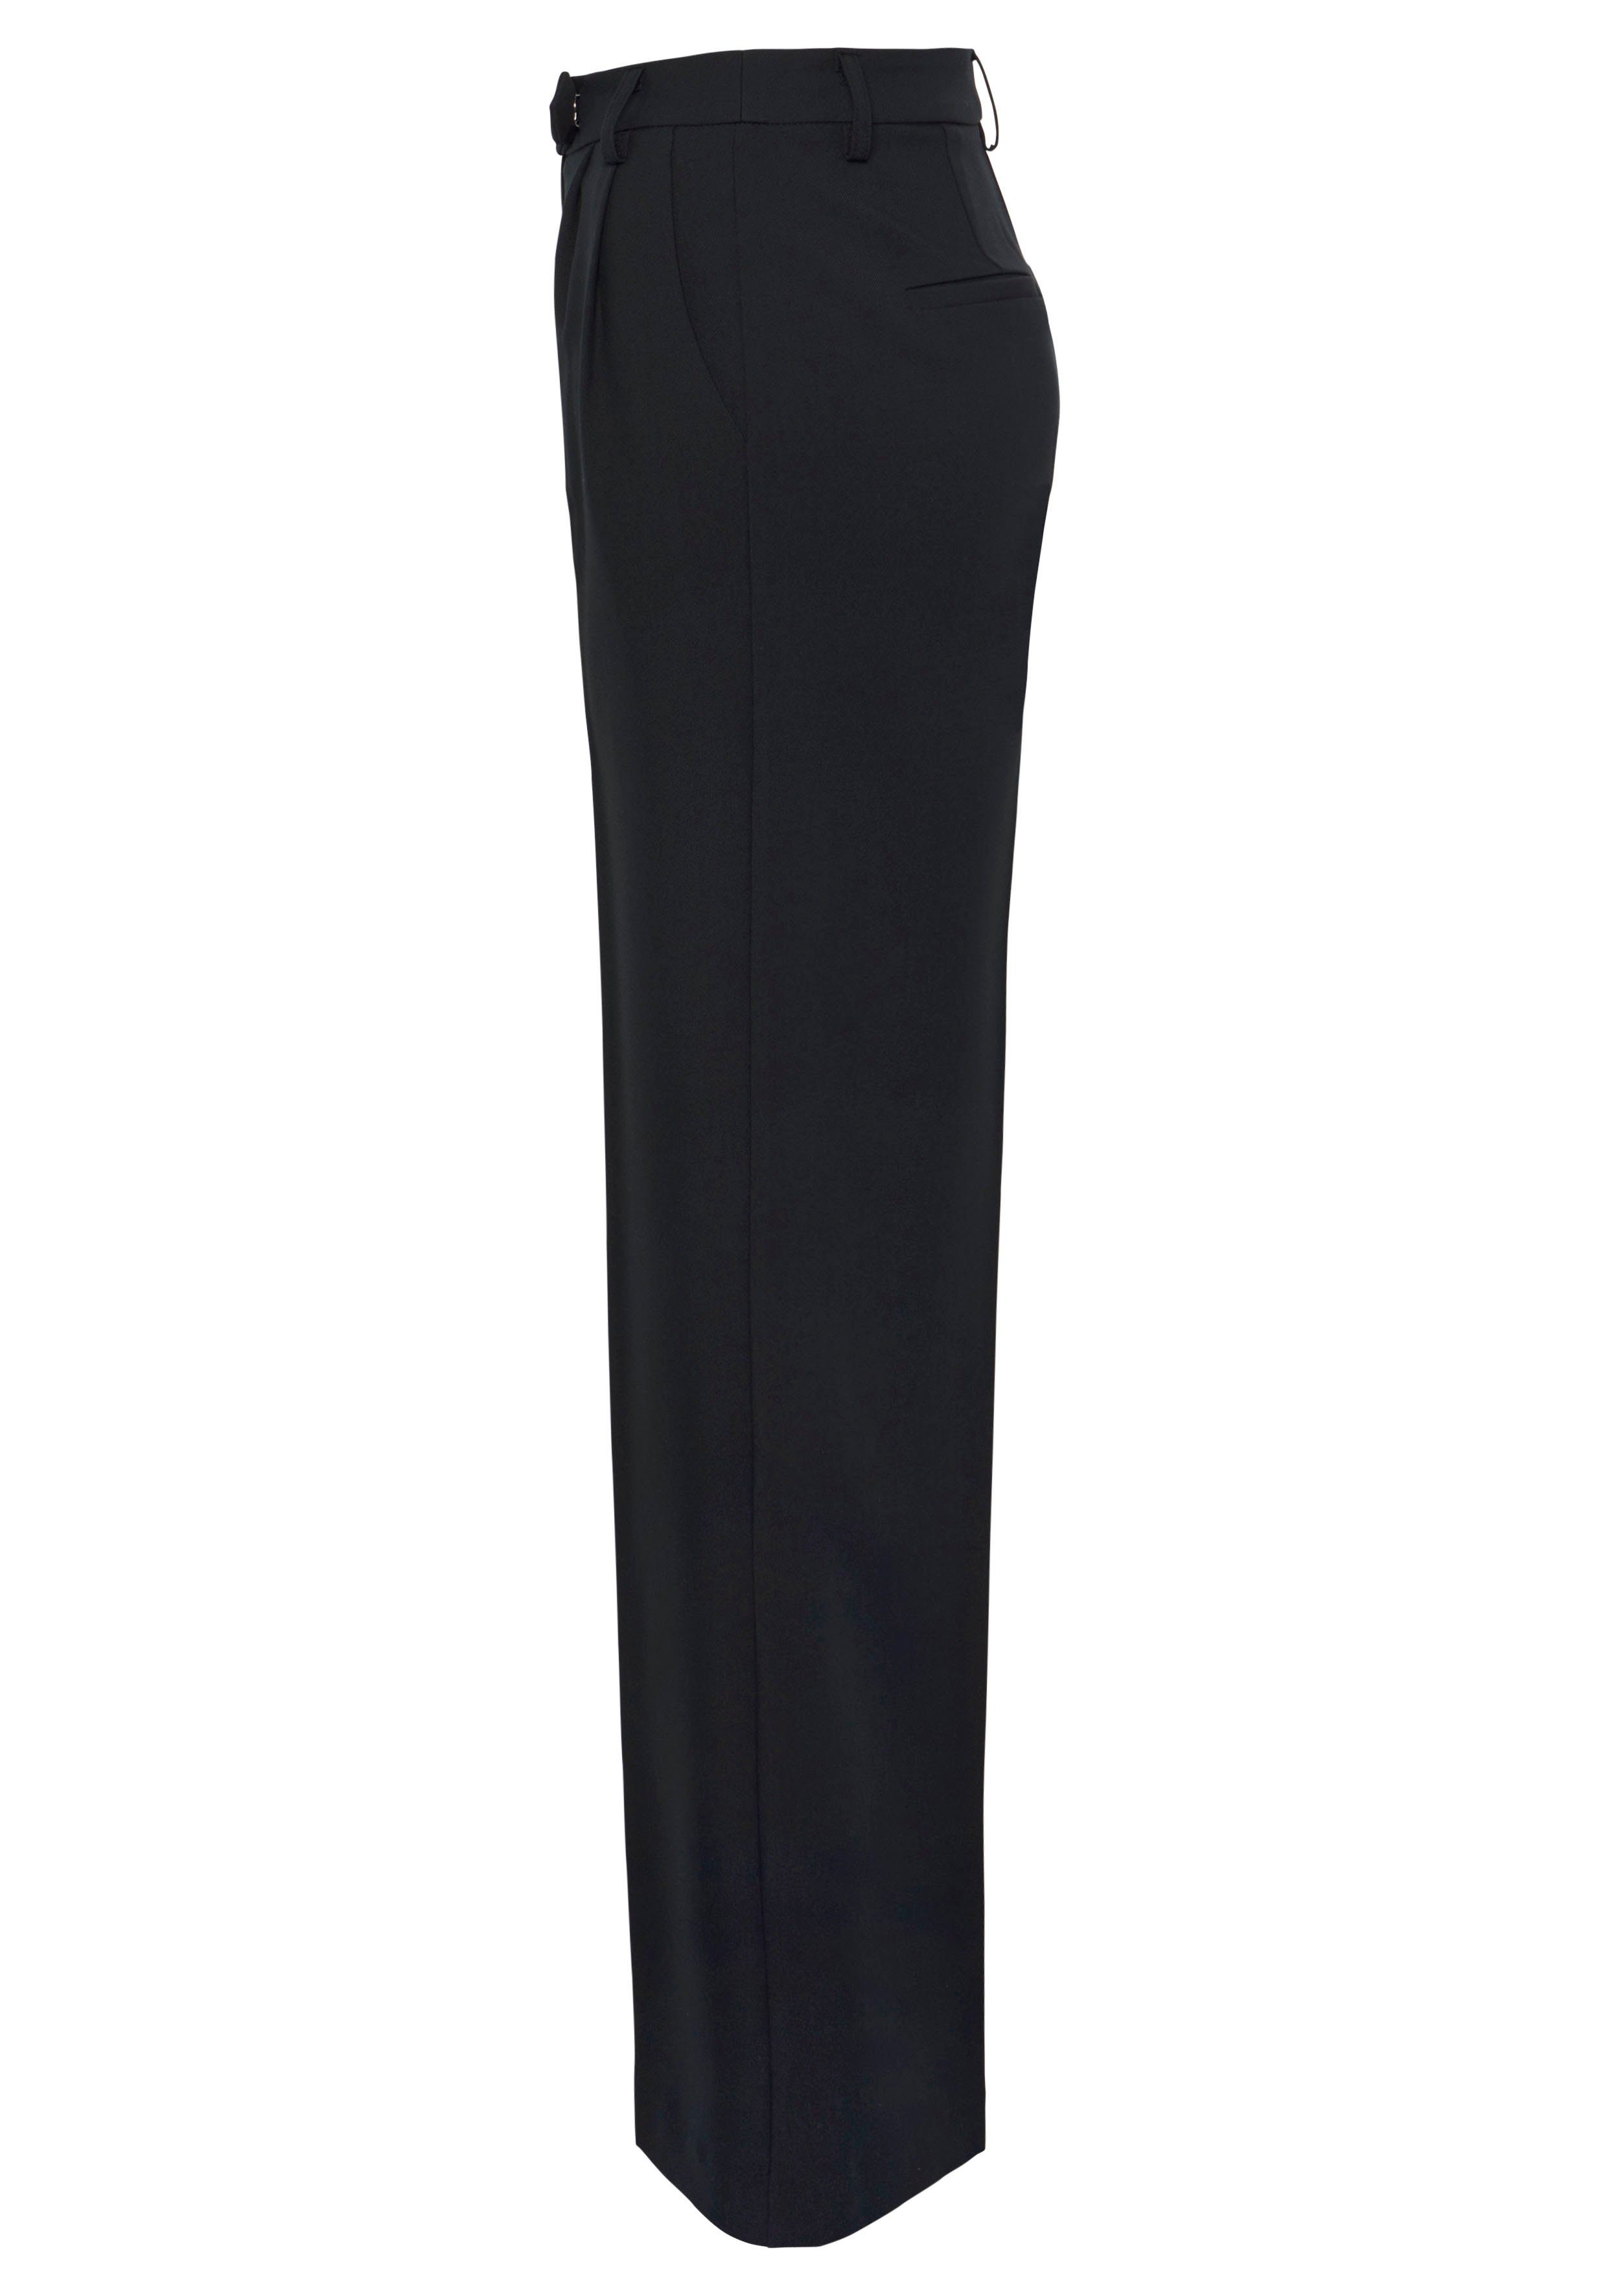 HECHTER PARIS mit Anzughose schwarz weitem Bein